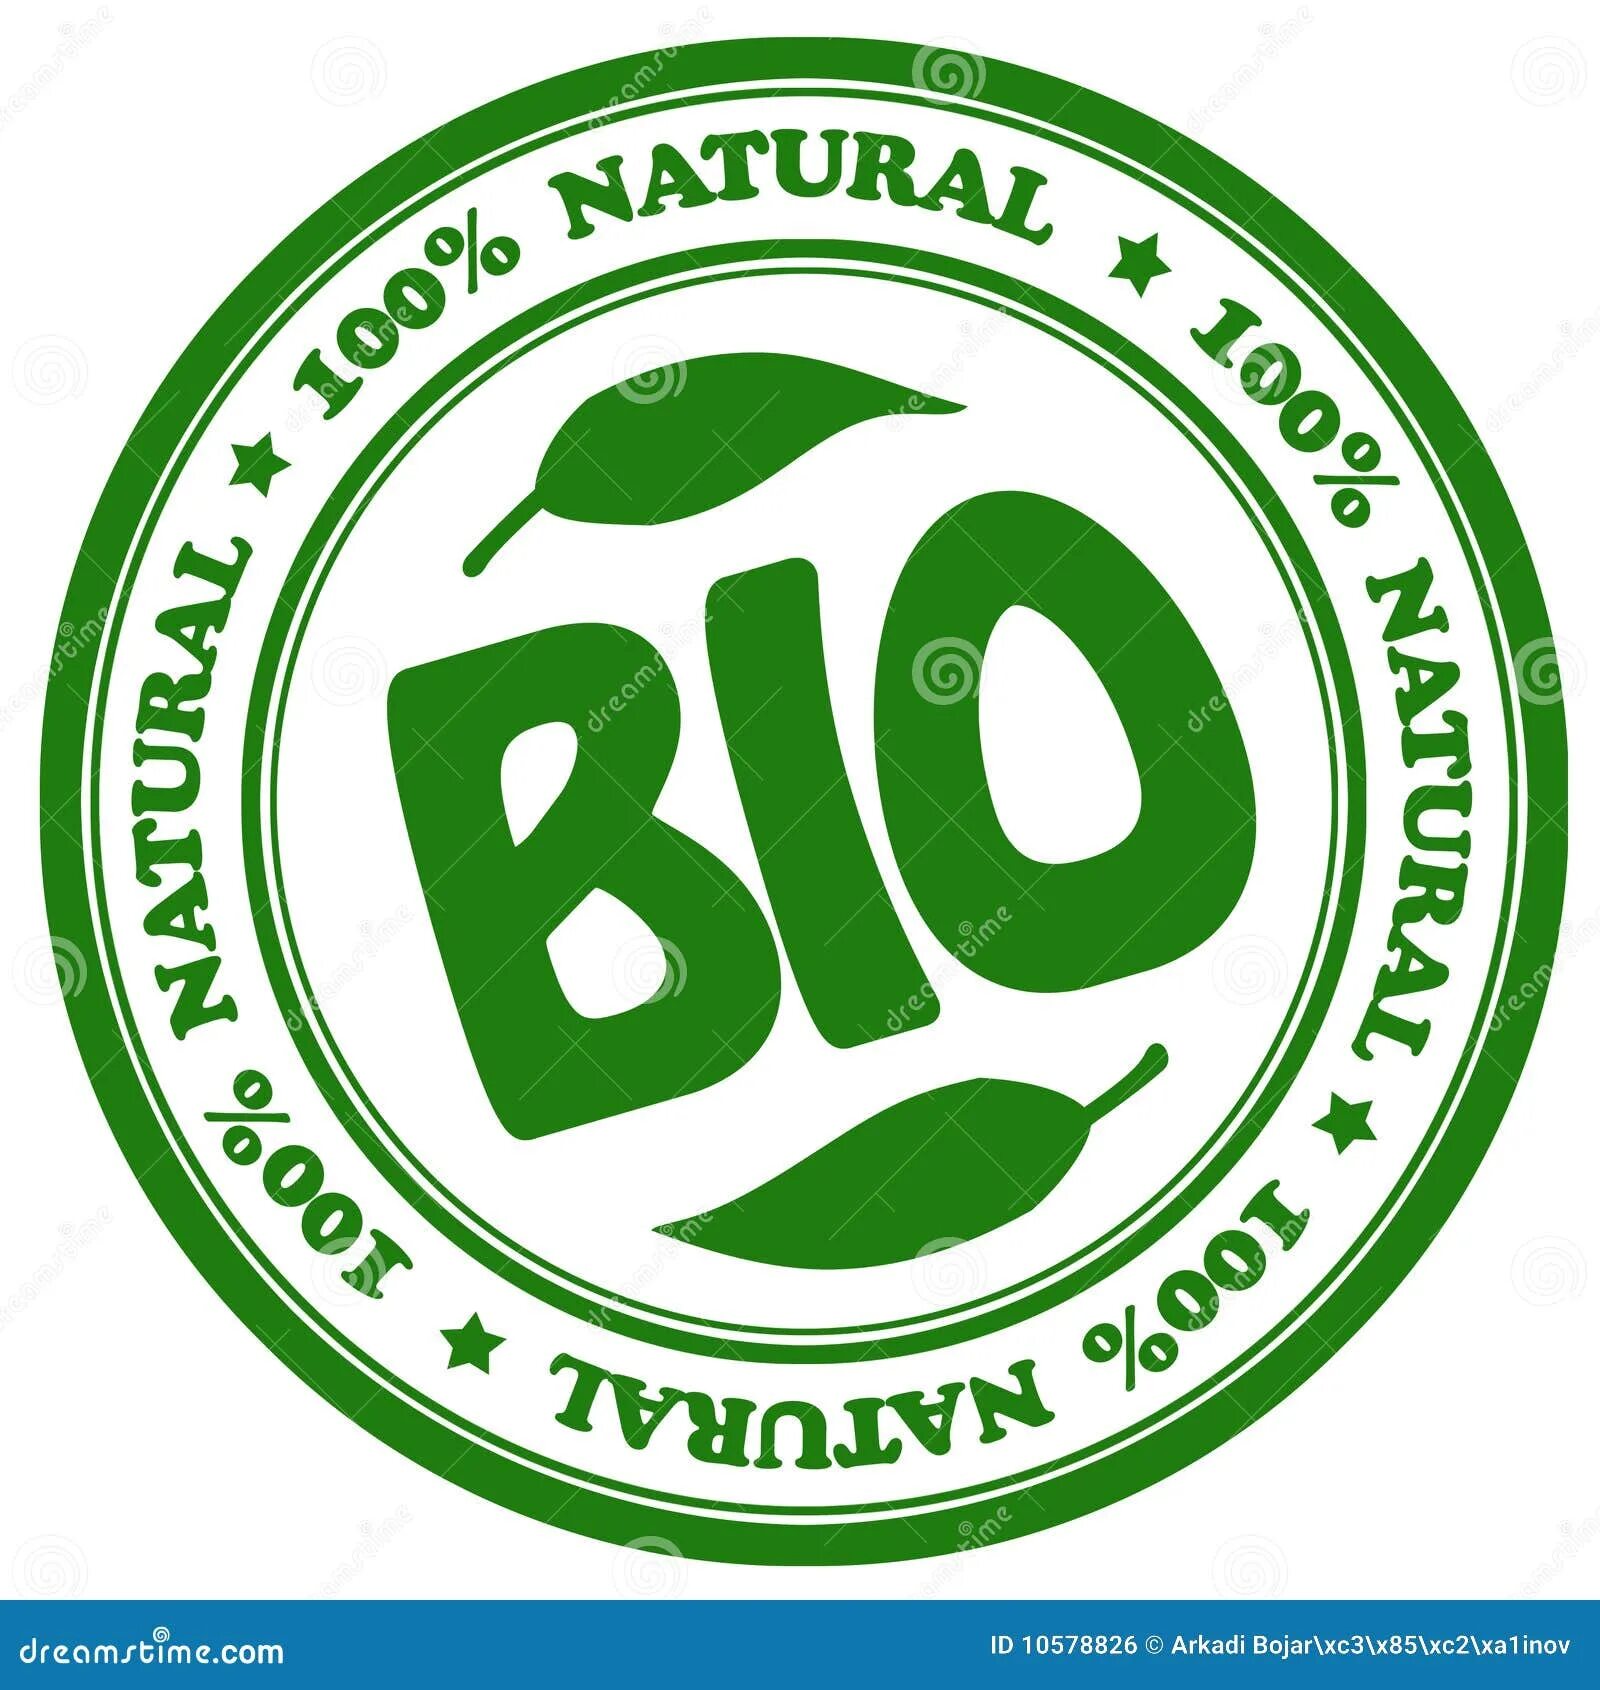 Bio natural. Натуральный продукт значок. Био натуральный продукт. 100 Натуральный продукт значок. Знаки эко био.